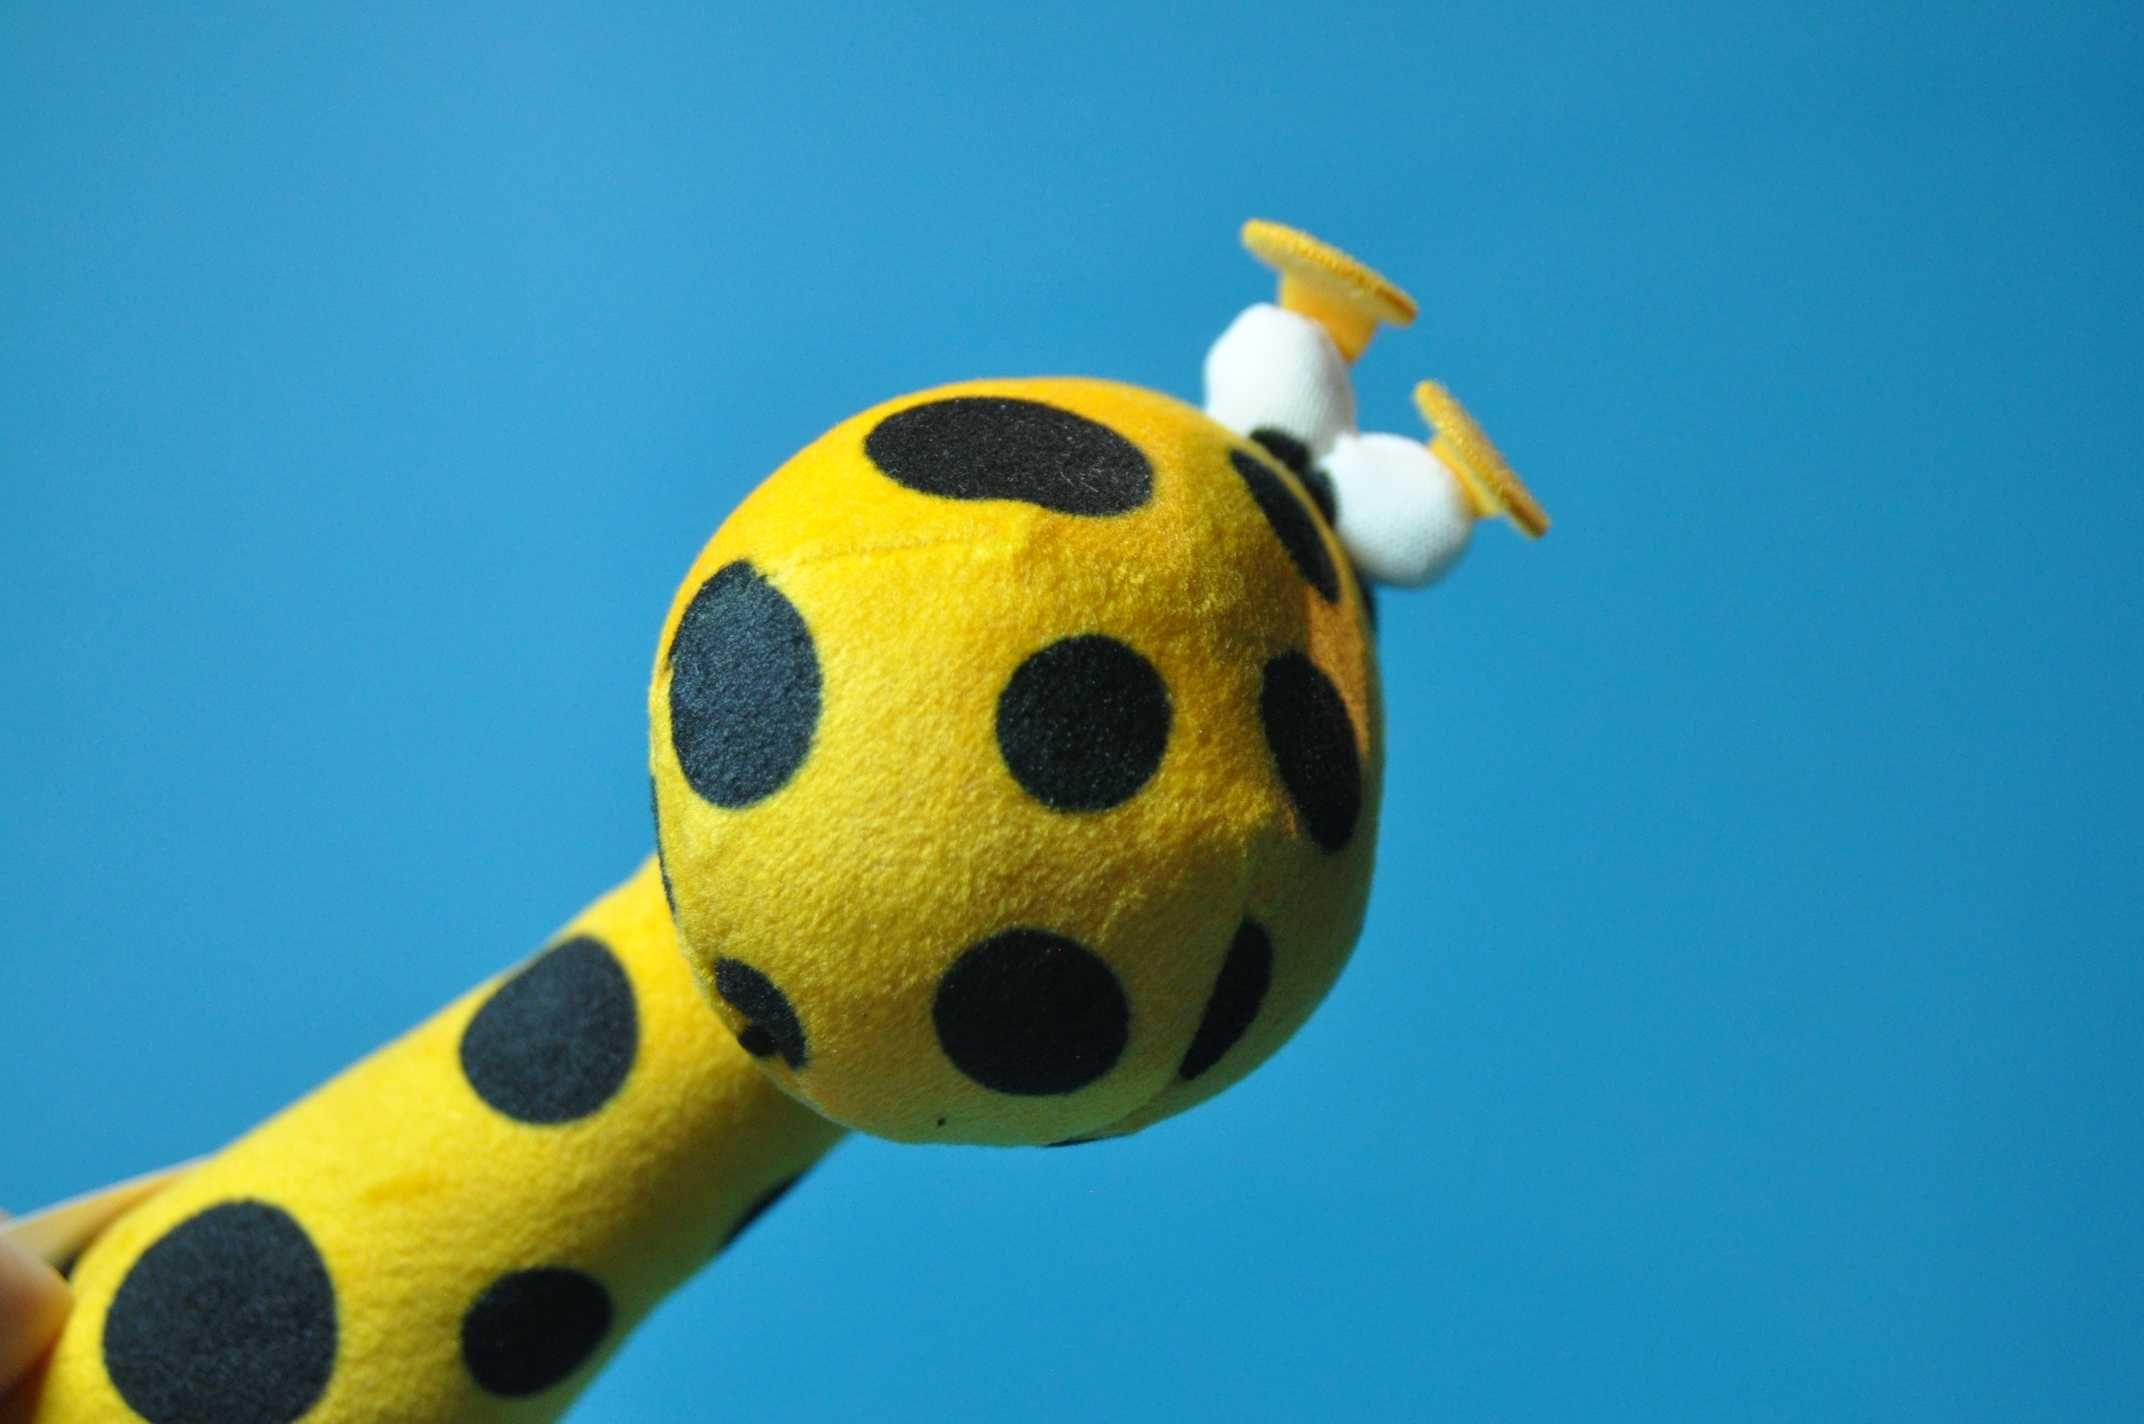 Grzechotka Żyrafa Ikea Klappa przesympatyczna